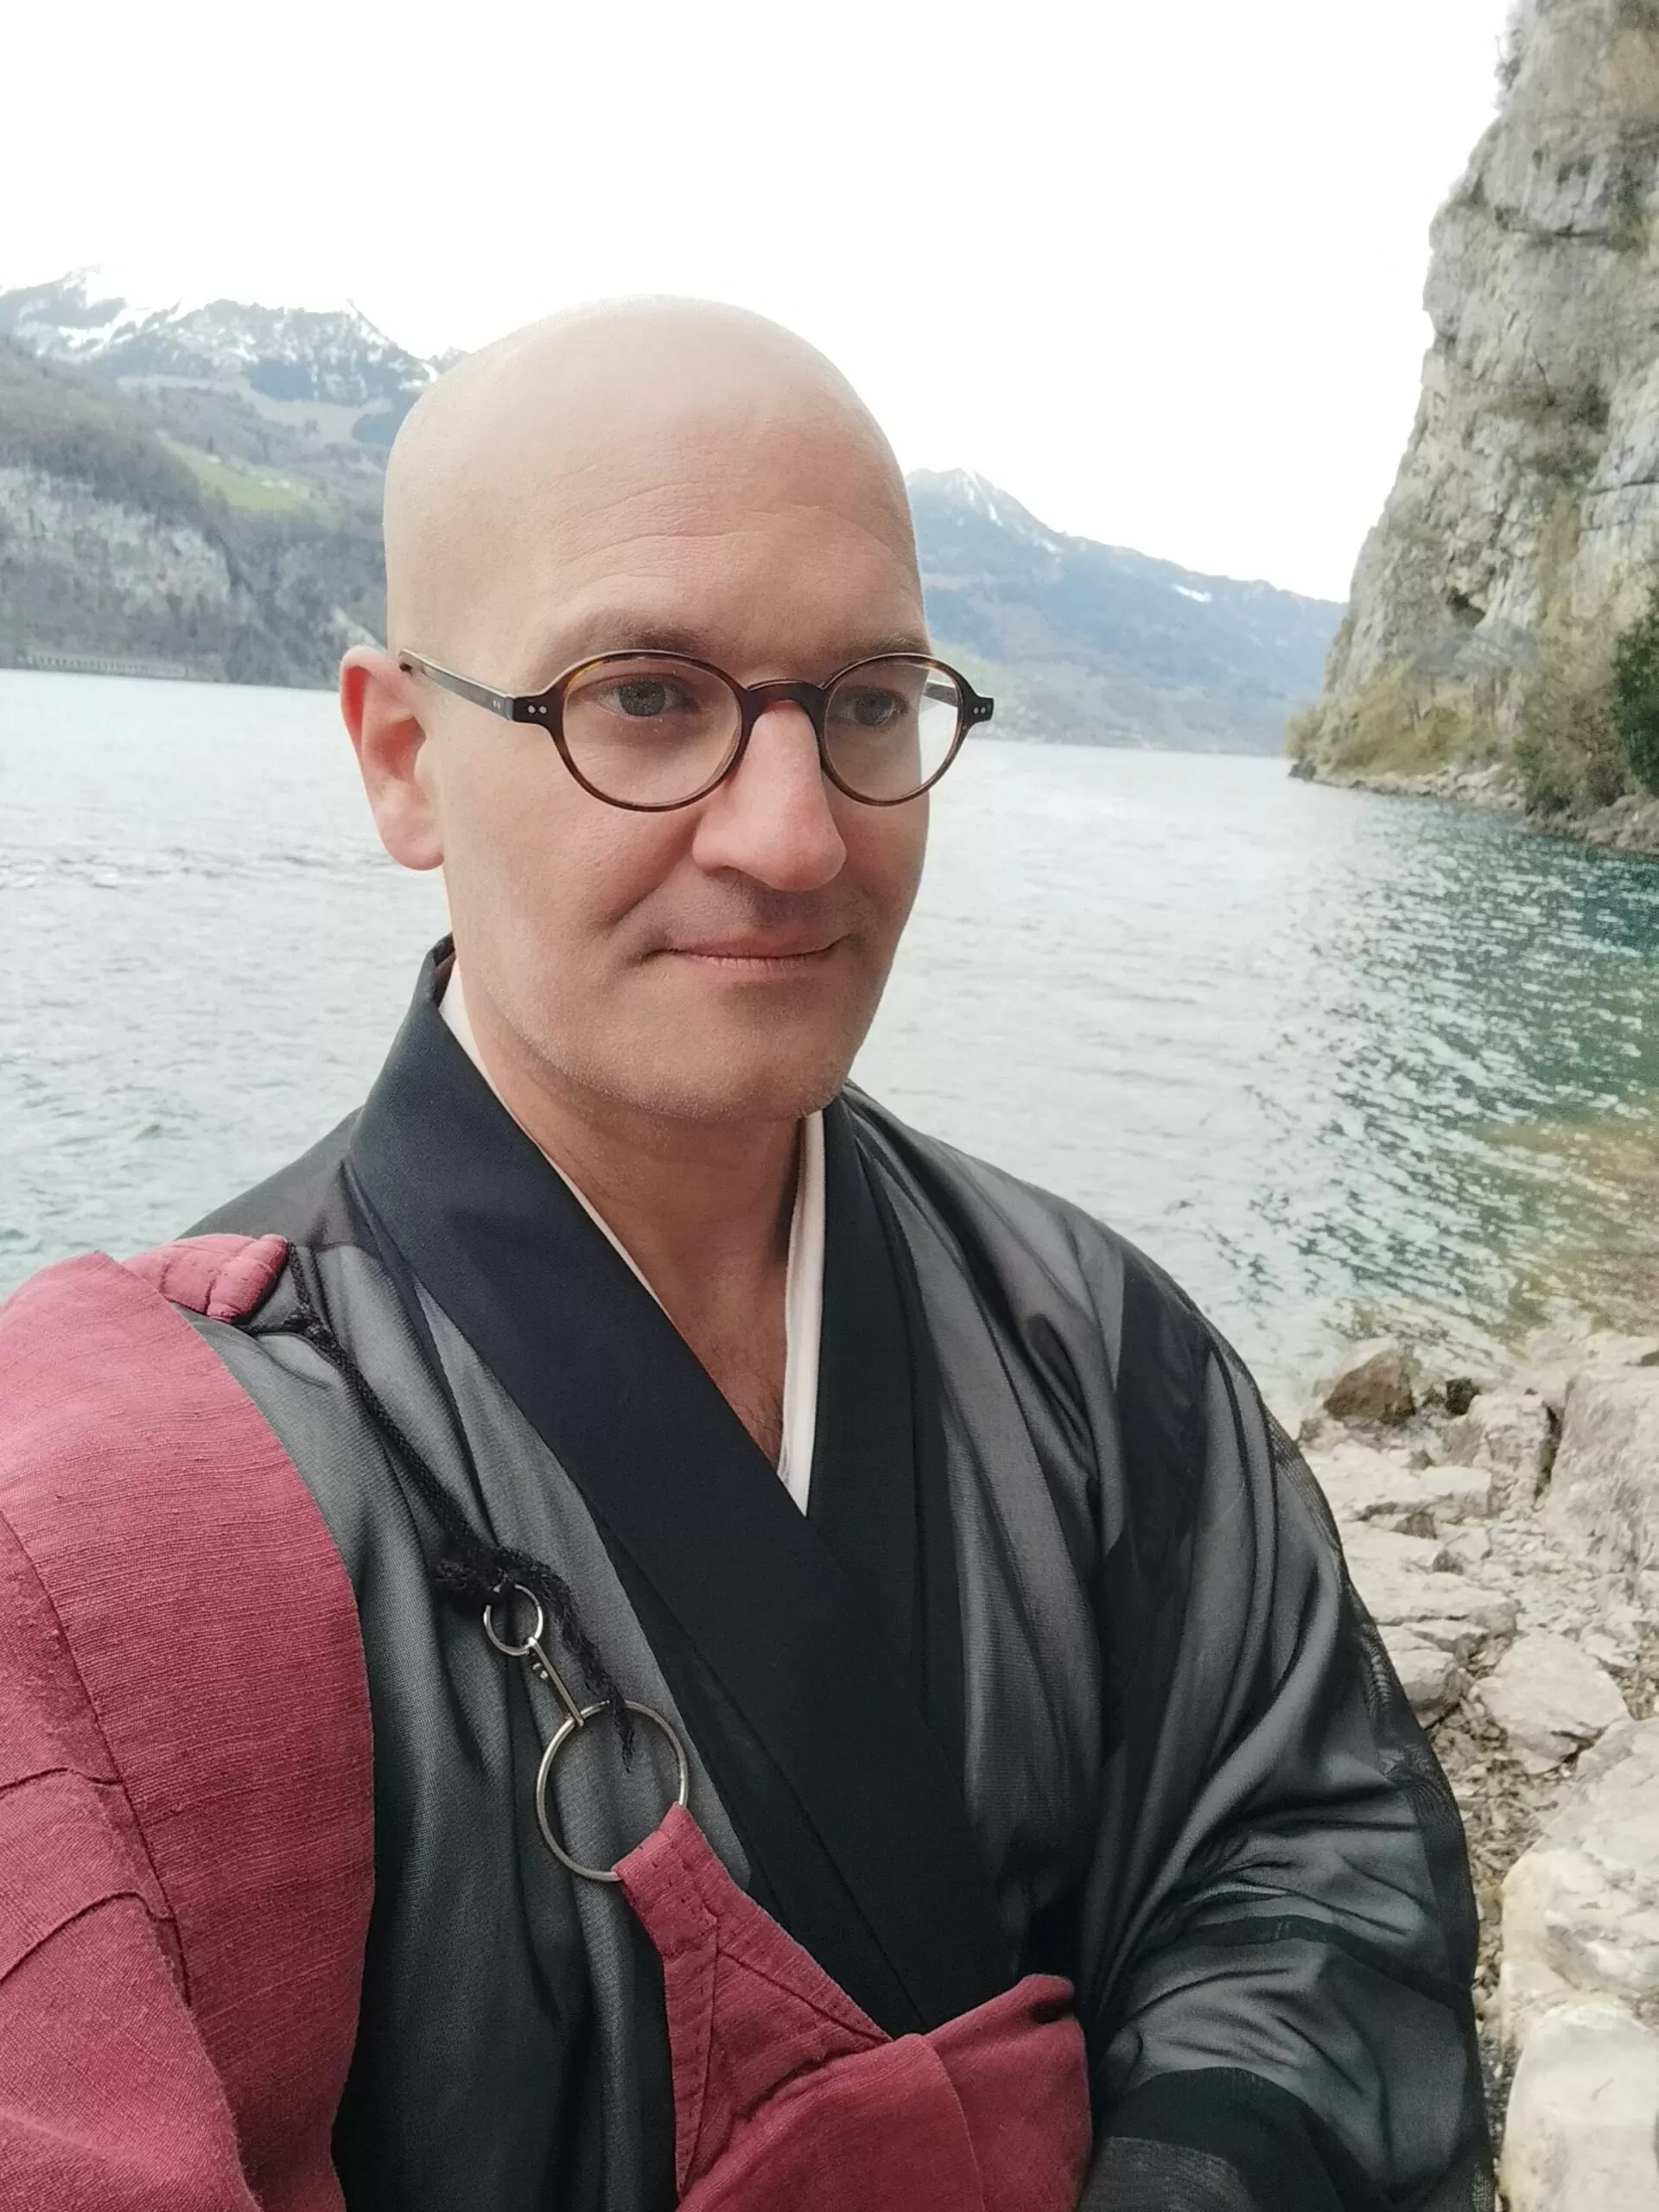 Trauerfeier am See - Trauerredner - Zen Meister Vater Reding